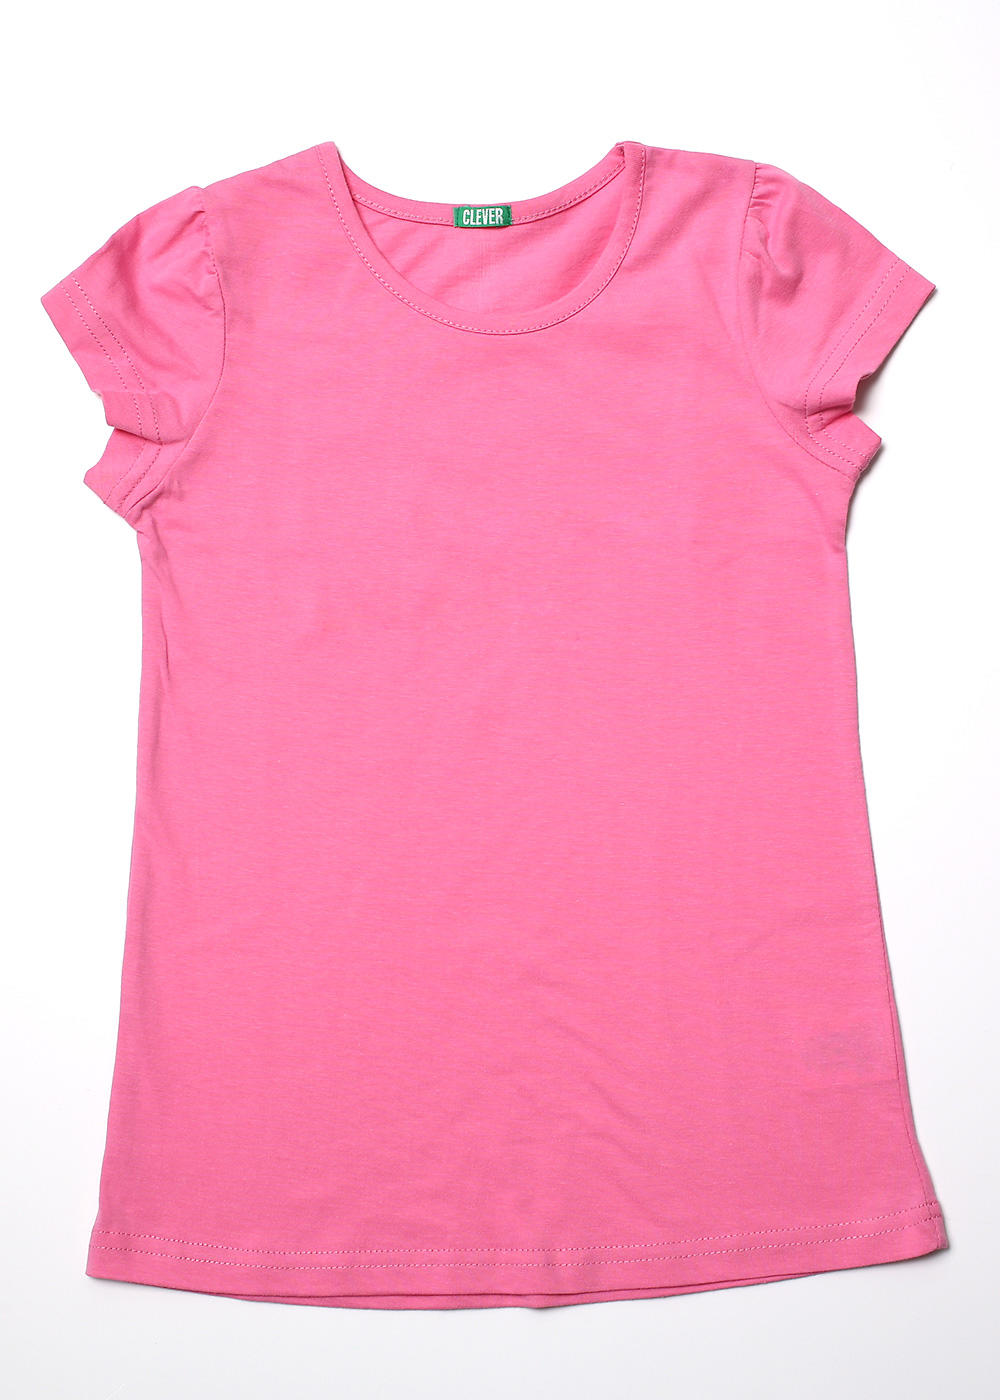 Розовая футболка для девочки. Футболка для девочки розовая. Розовая футболка детская. Детские Девчачьи футболки. Розовый цвет в майке.